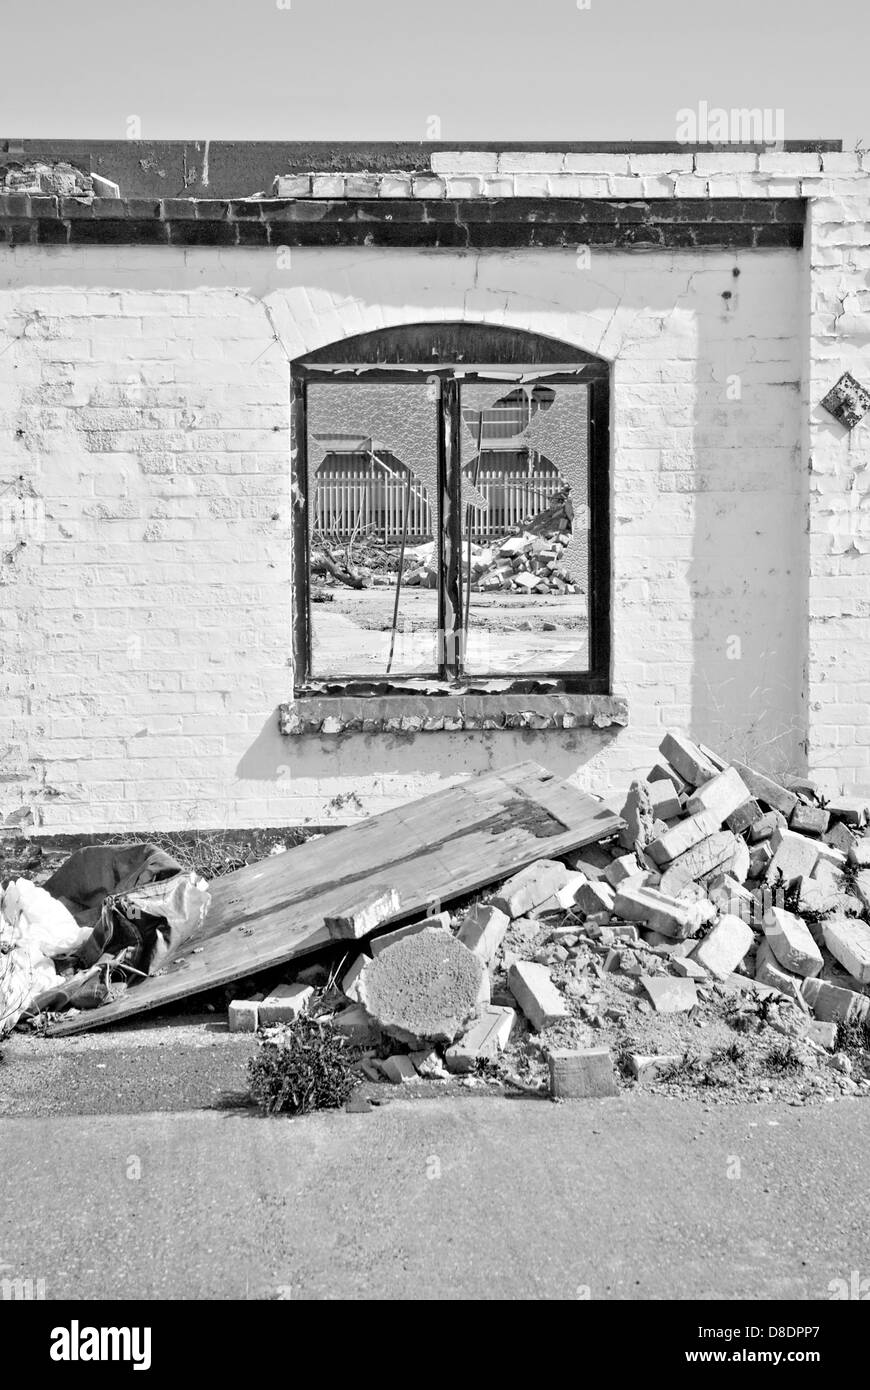 Black & White immagine ritratto che mostra il degrado urbano. Foto Stock